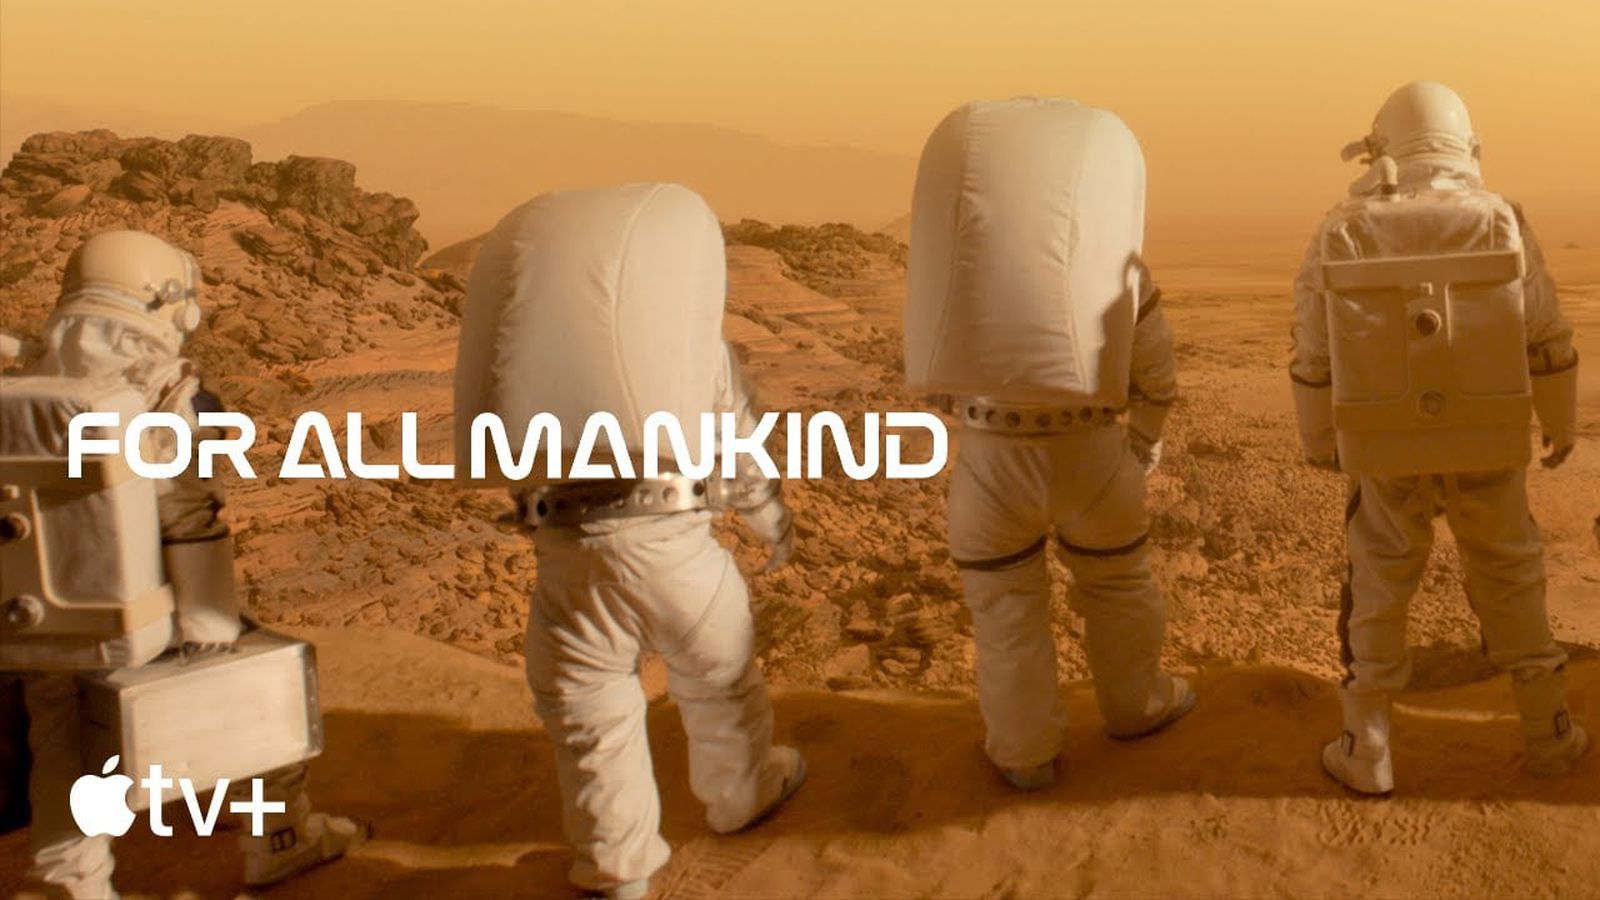 Apple divulga trailer da 3ª temporada de ‘For All Mankind’